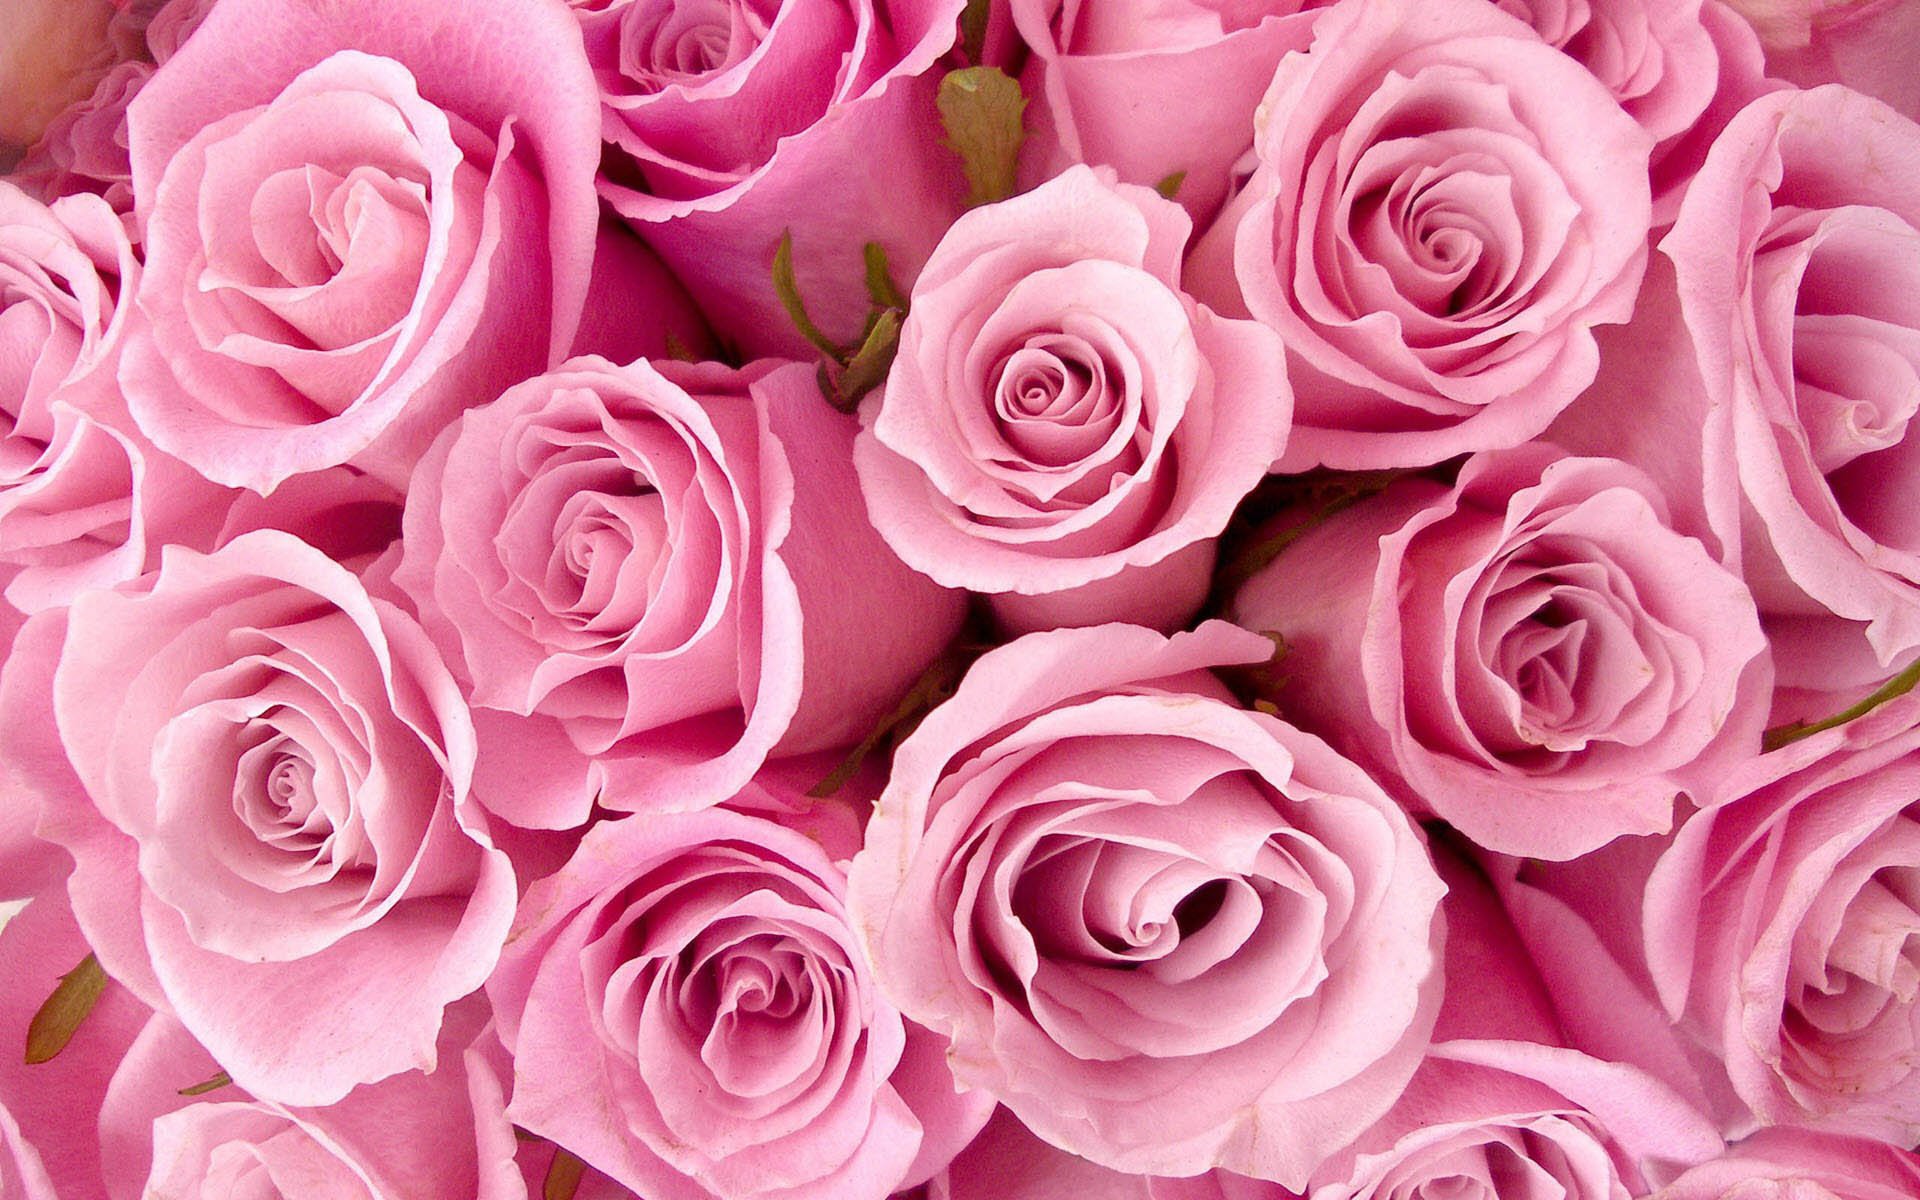 Làm cho màn hình của bạn trở nên rực rỡ hơn bao giờ hết với hình nền hoa màu hồng tươi sáng. Với những hình ảnh hoa đầy màu sắc, sẽ mang lại cho bạn cảm giác tươi mới và thư giãn khi lướt qua màn hình mỗi ngày.